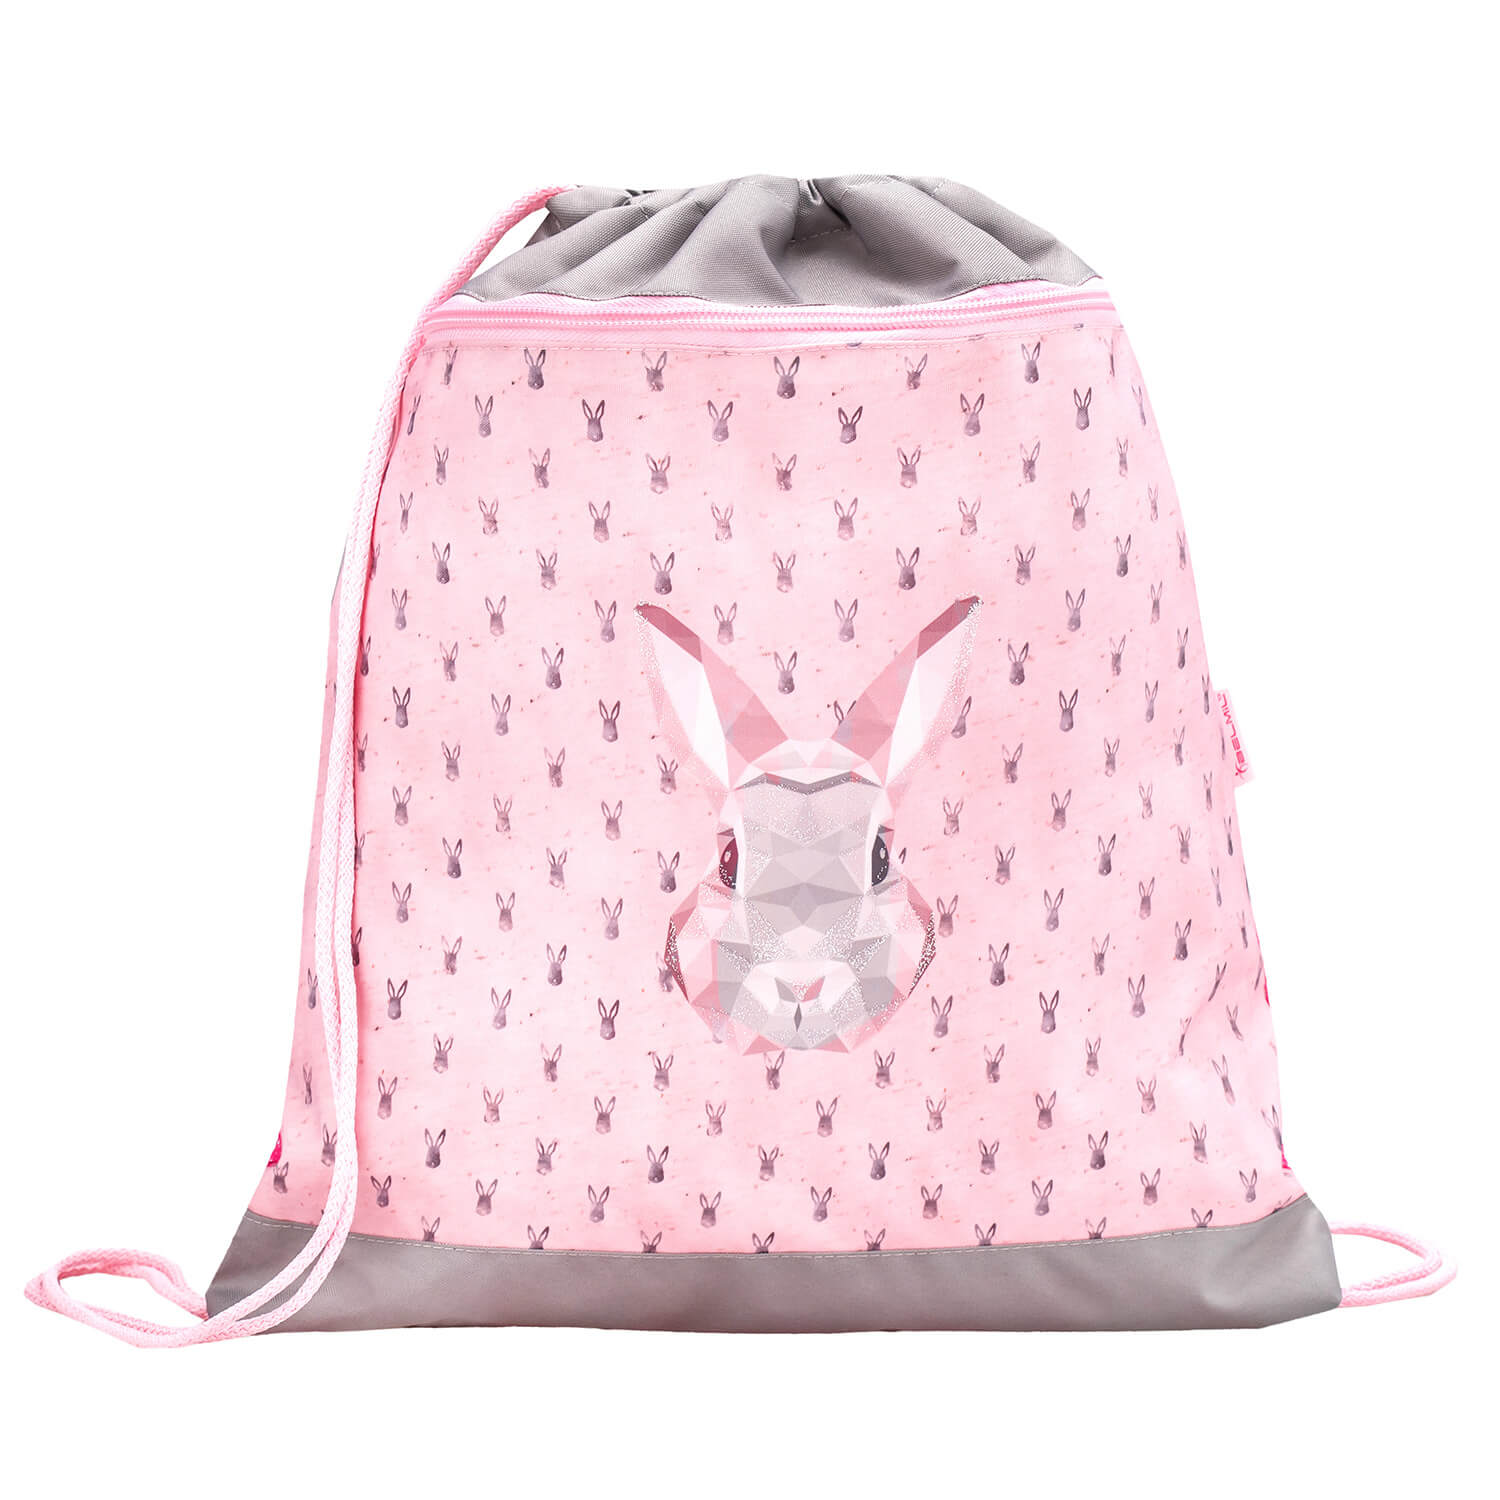 Classy Bunny schoolbag set 4 pcs